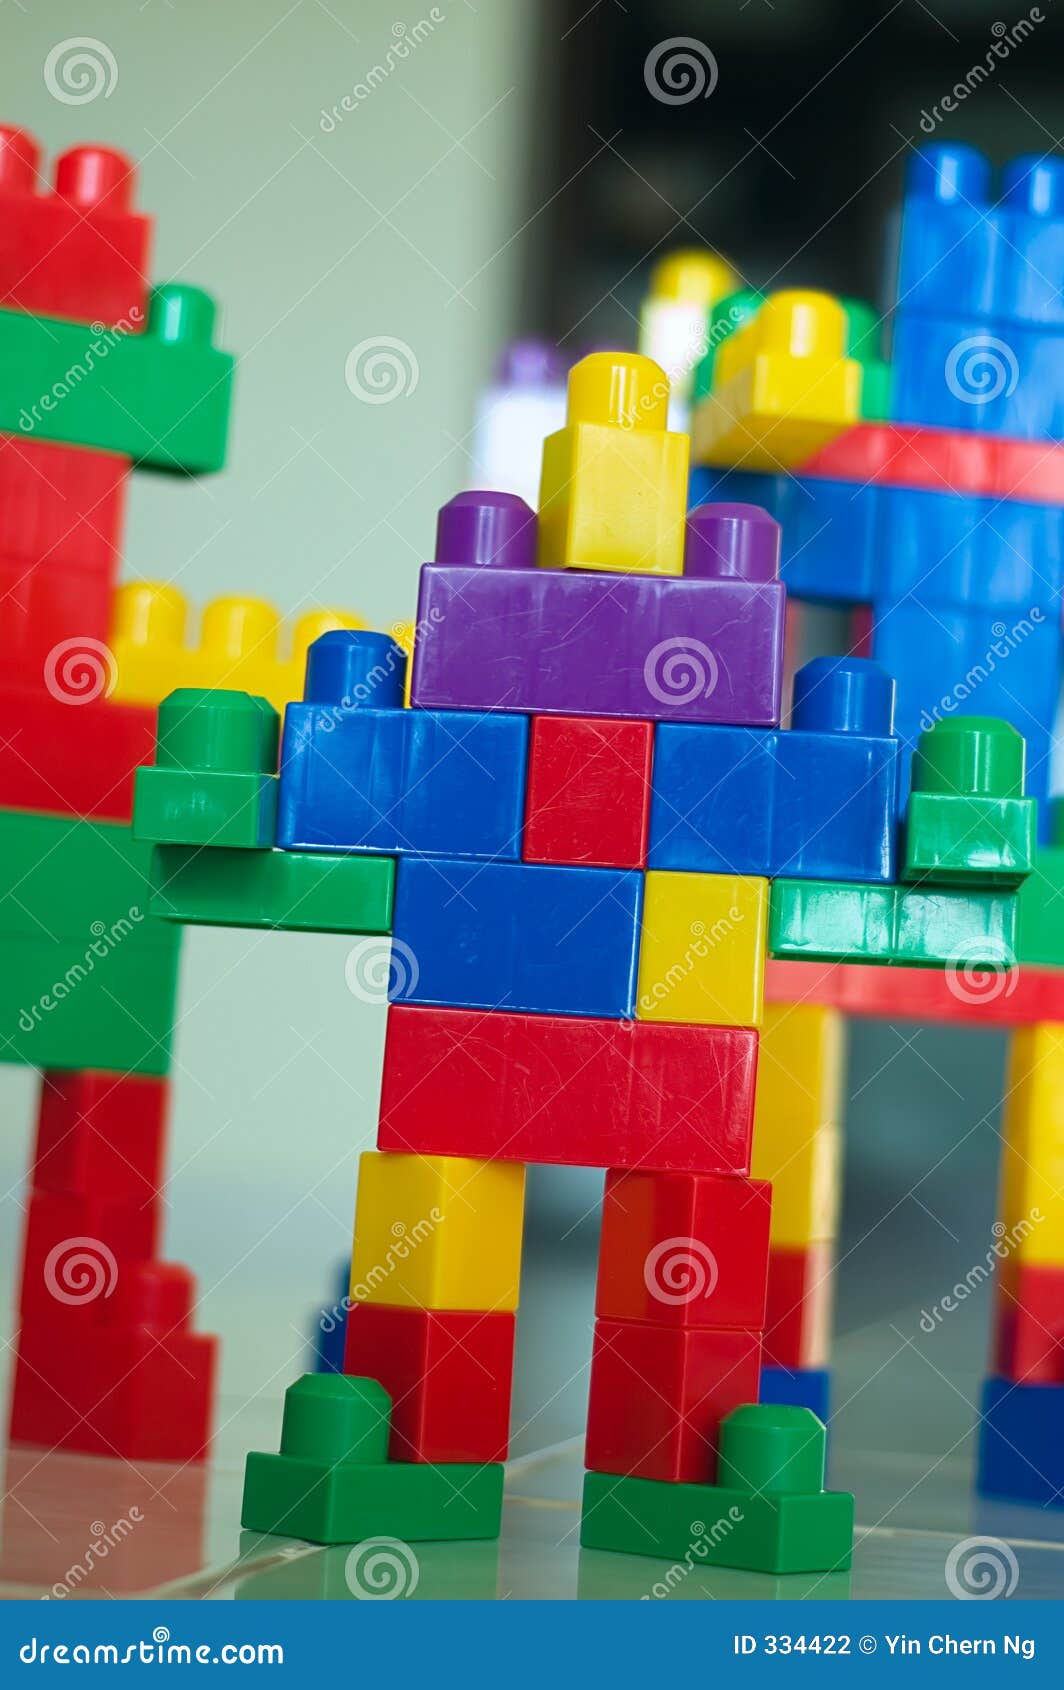 Stå sammen facet Midlertidig Robot Blocks 01 stock photo. Image of isolated, geometric - 334422